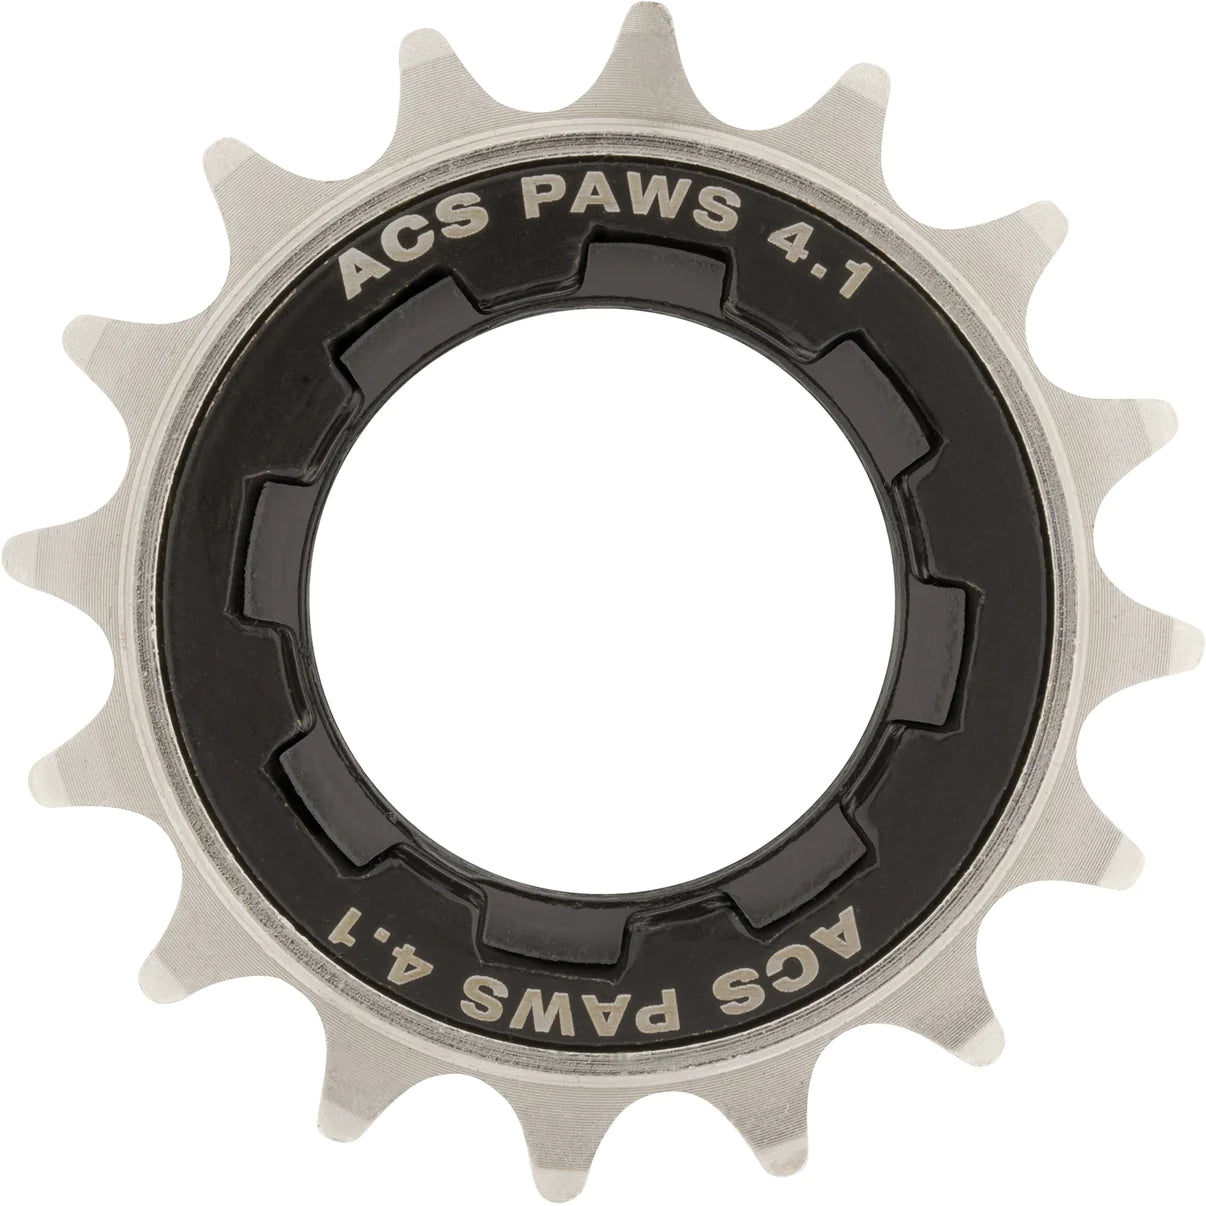 ACS Paws 4.1 Single Speed Freewheel